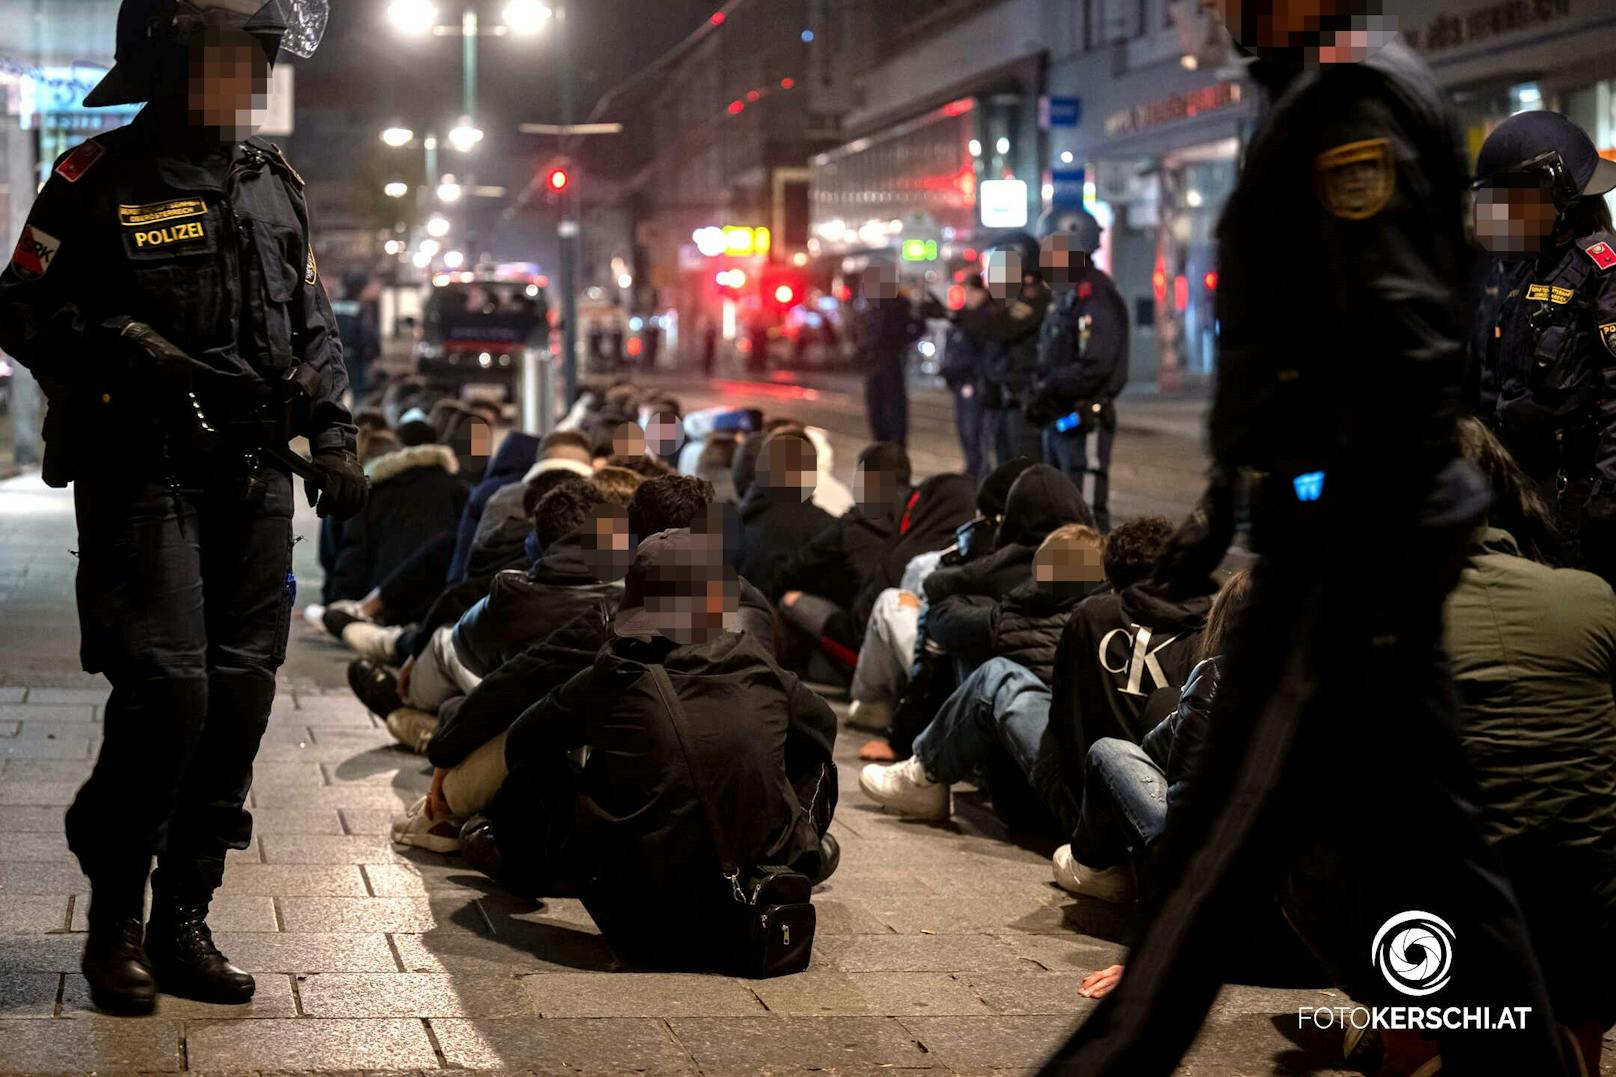 170 Polizisten waren angesichts der Krawalle in der Linzer Innenstadt im Einsatz. 